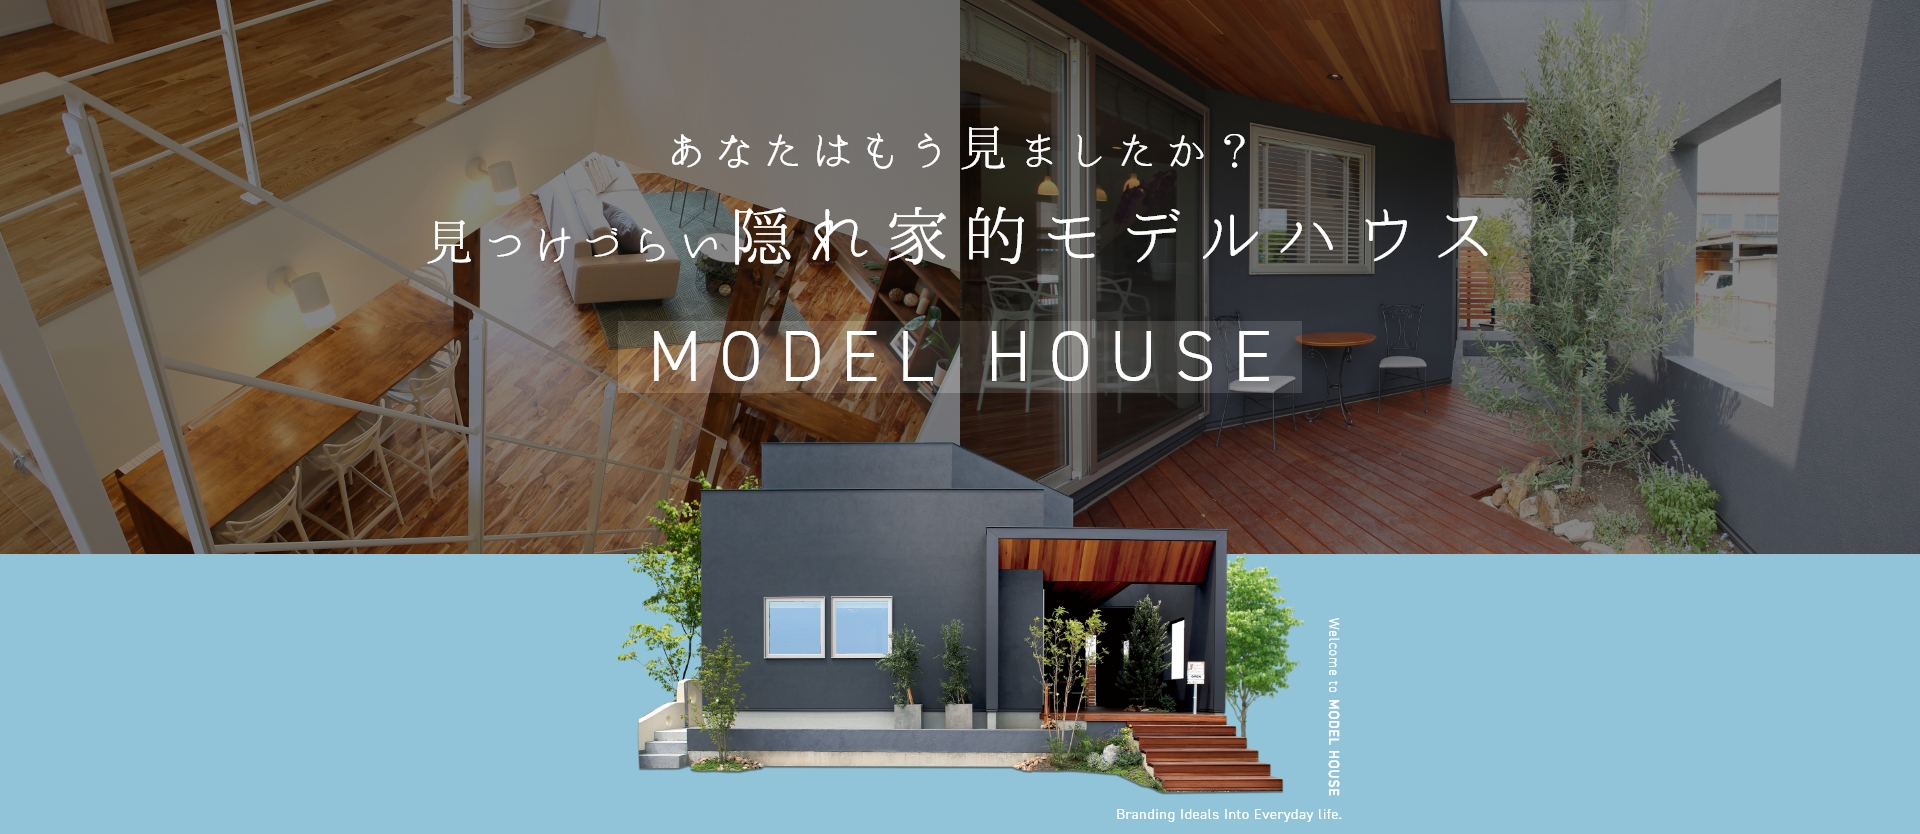 隠れ家的モデルハウス